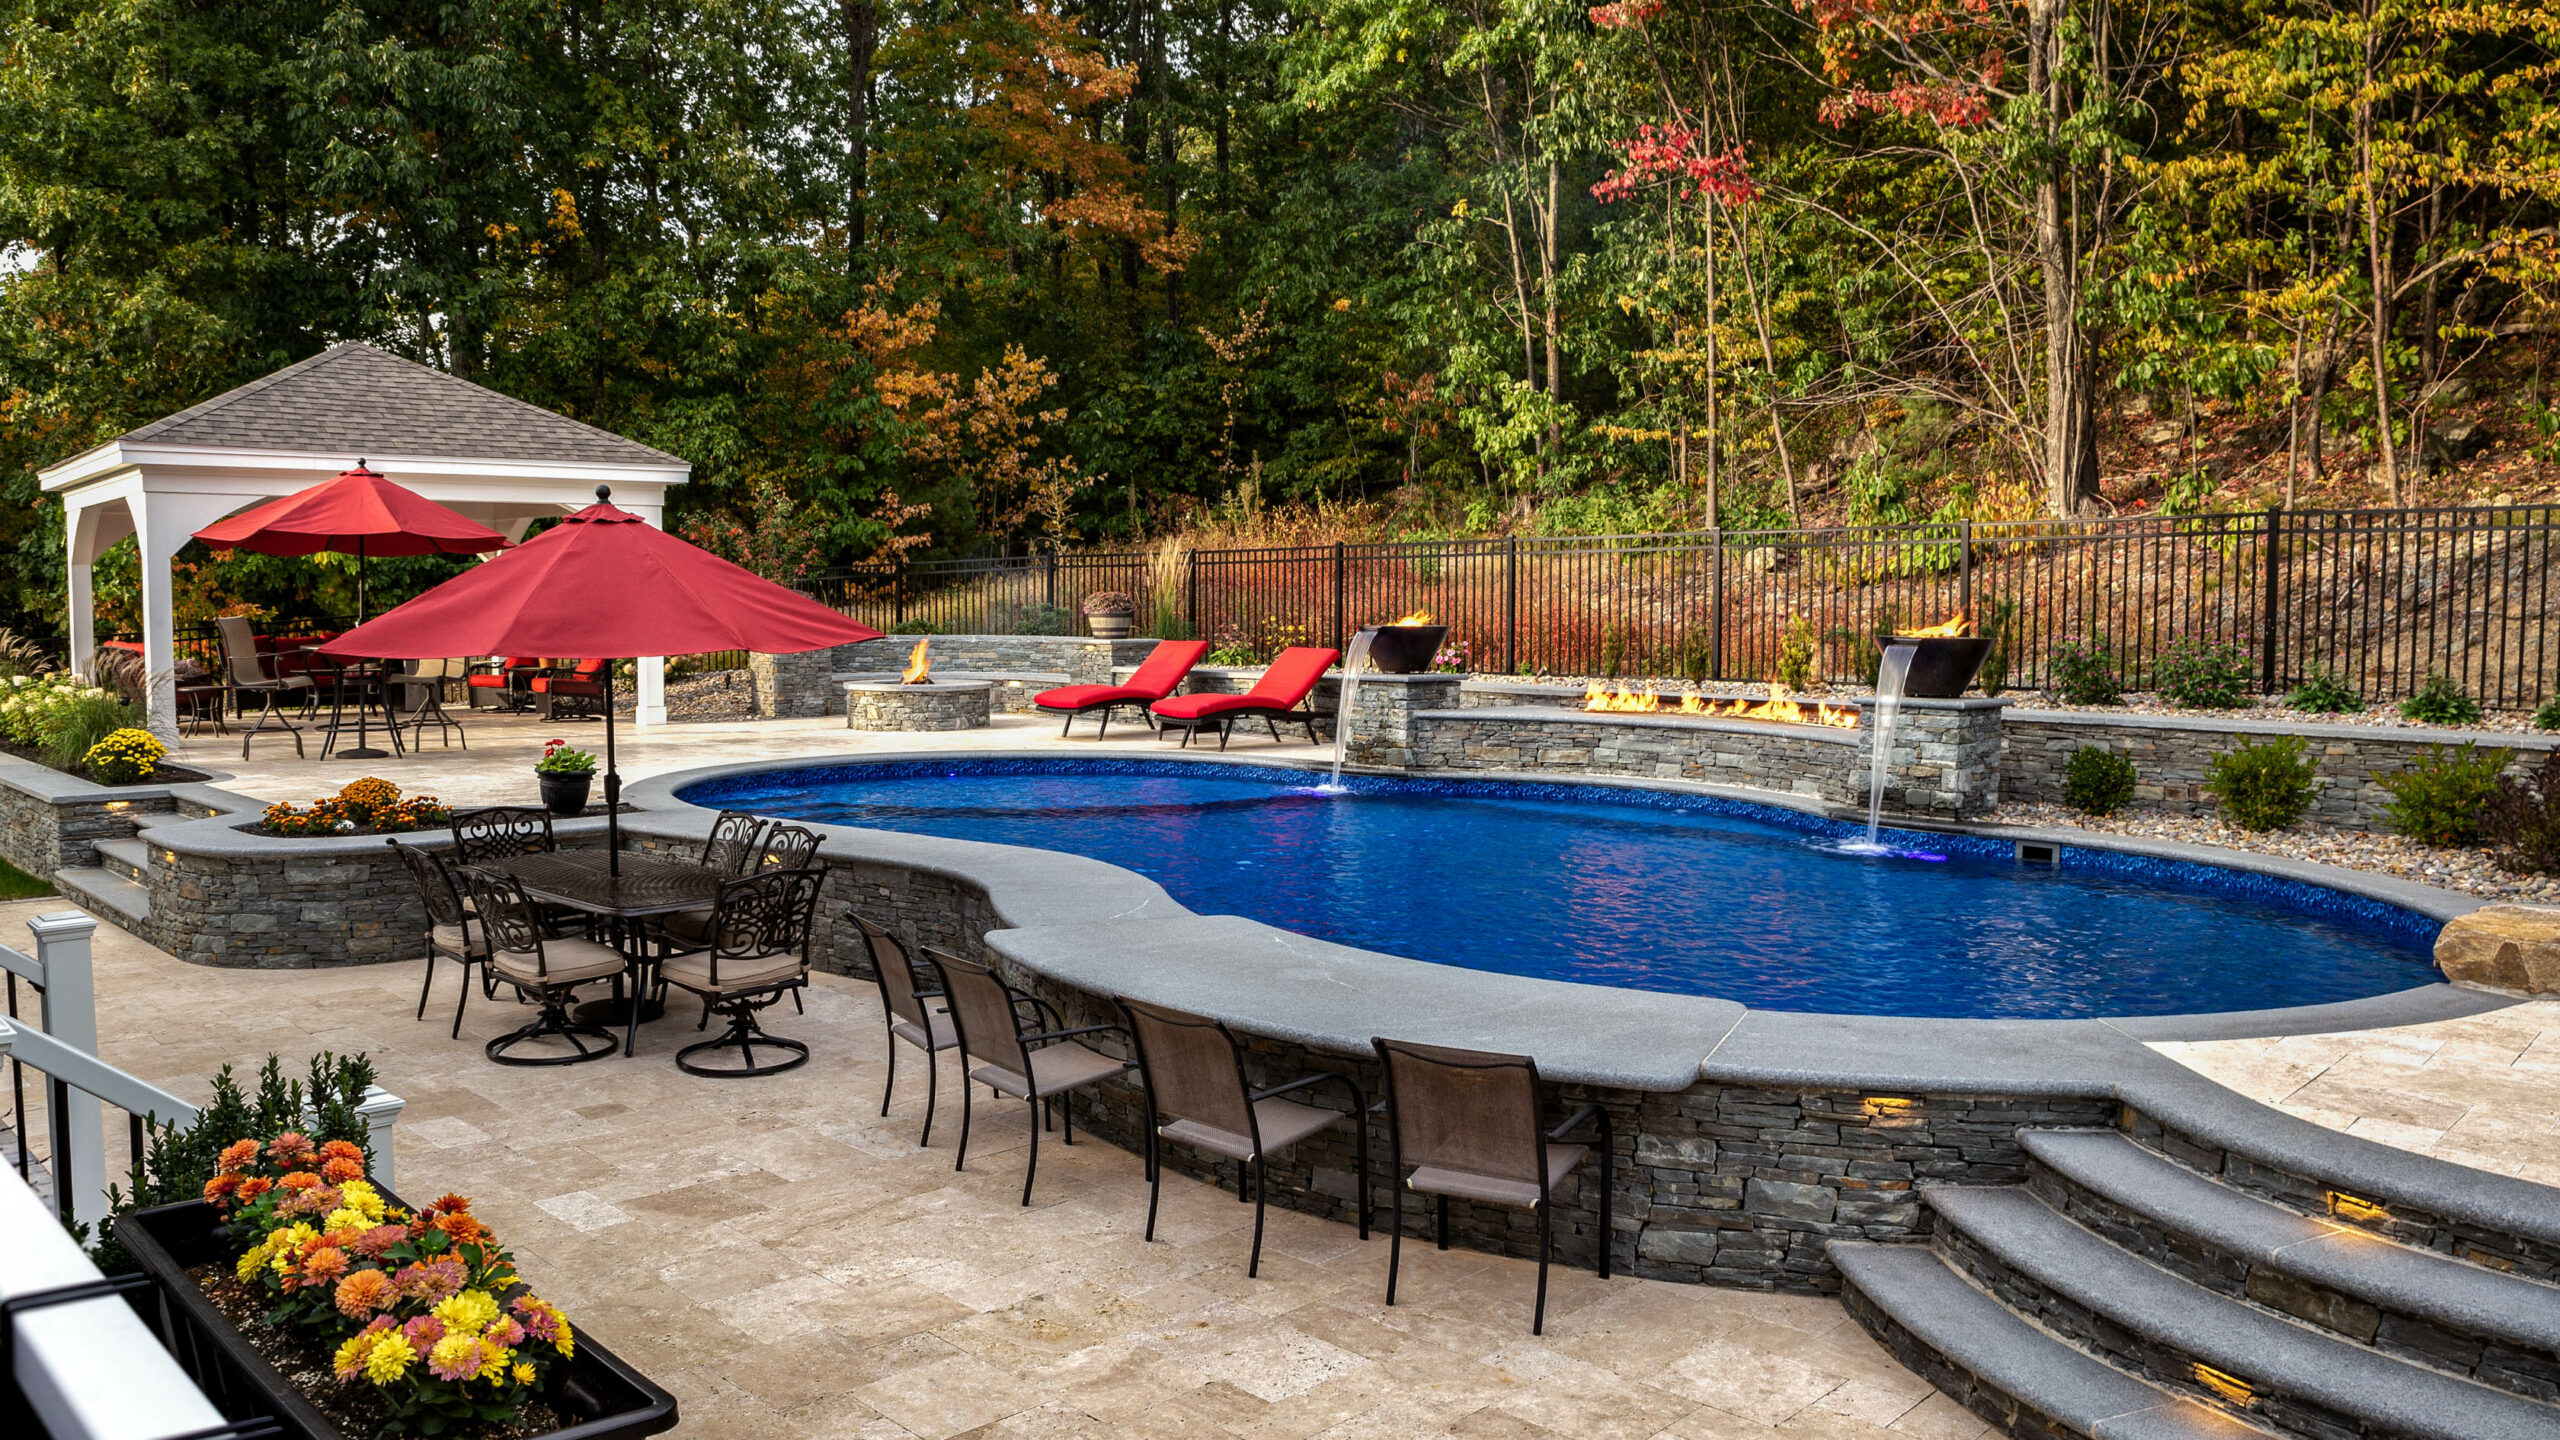 Backyard pool with bar built into pool.